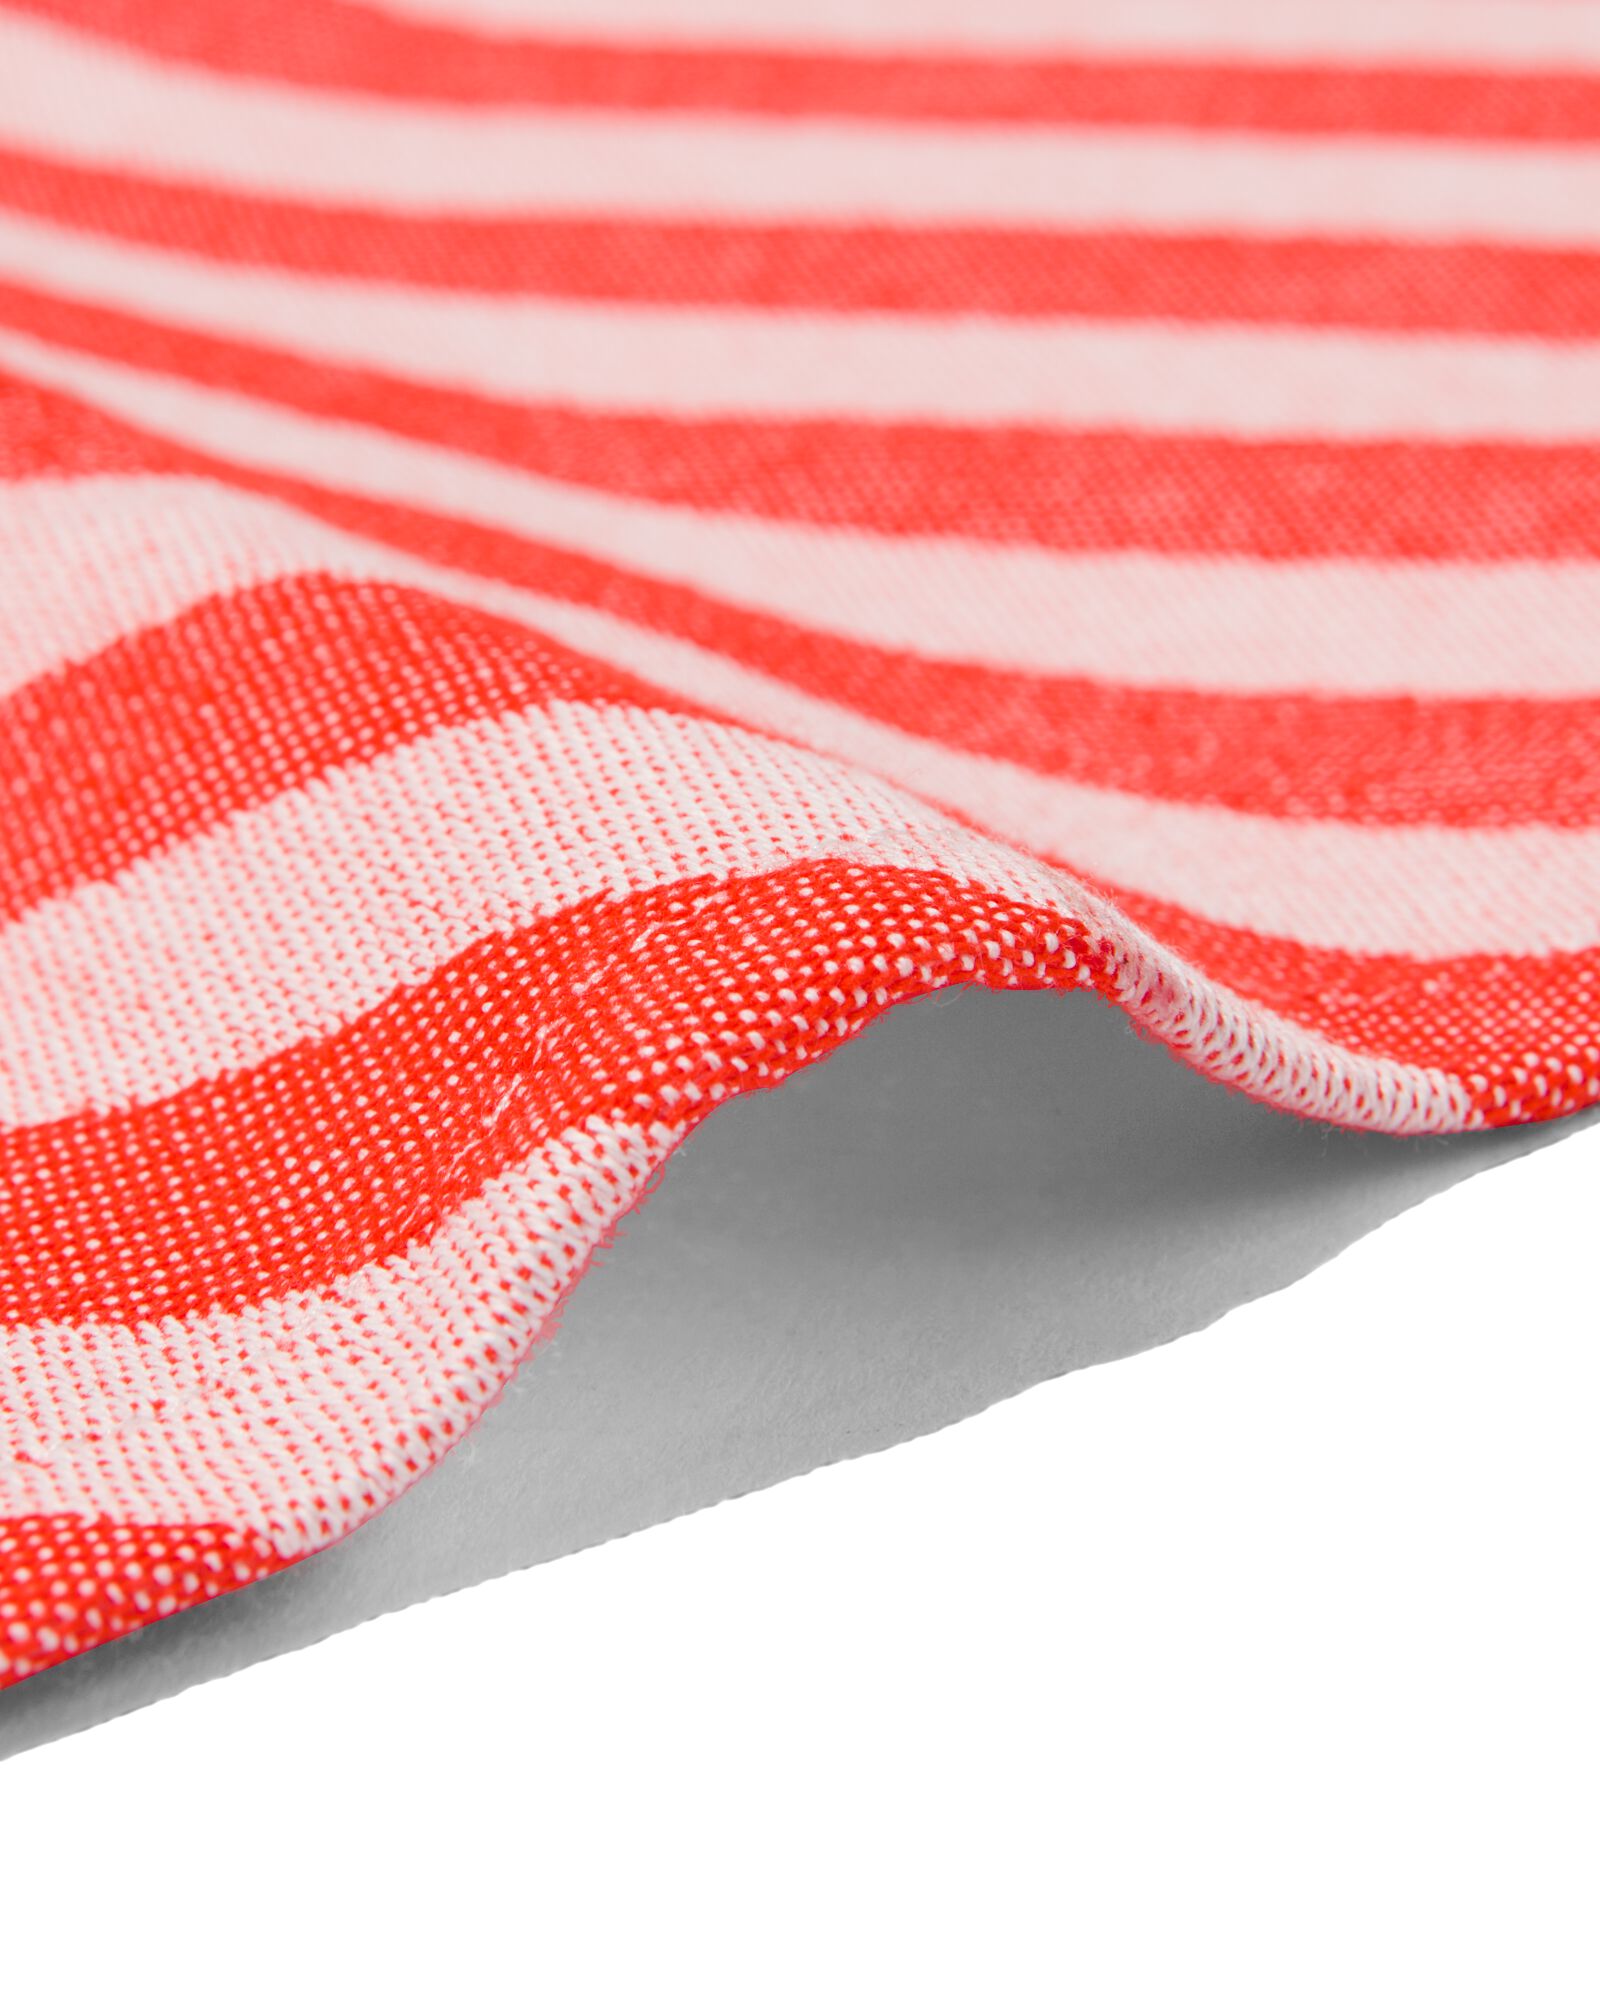 Torchons vaisselle éponge coton 40 x 40 cm 450 g/m2 rouge, lot de 3 -  Essuie-mains textile